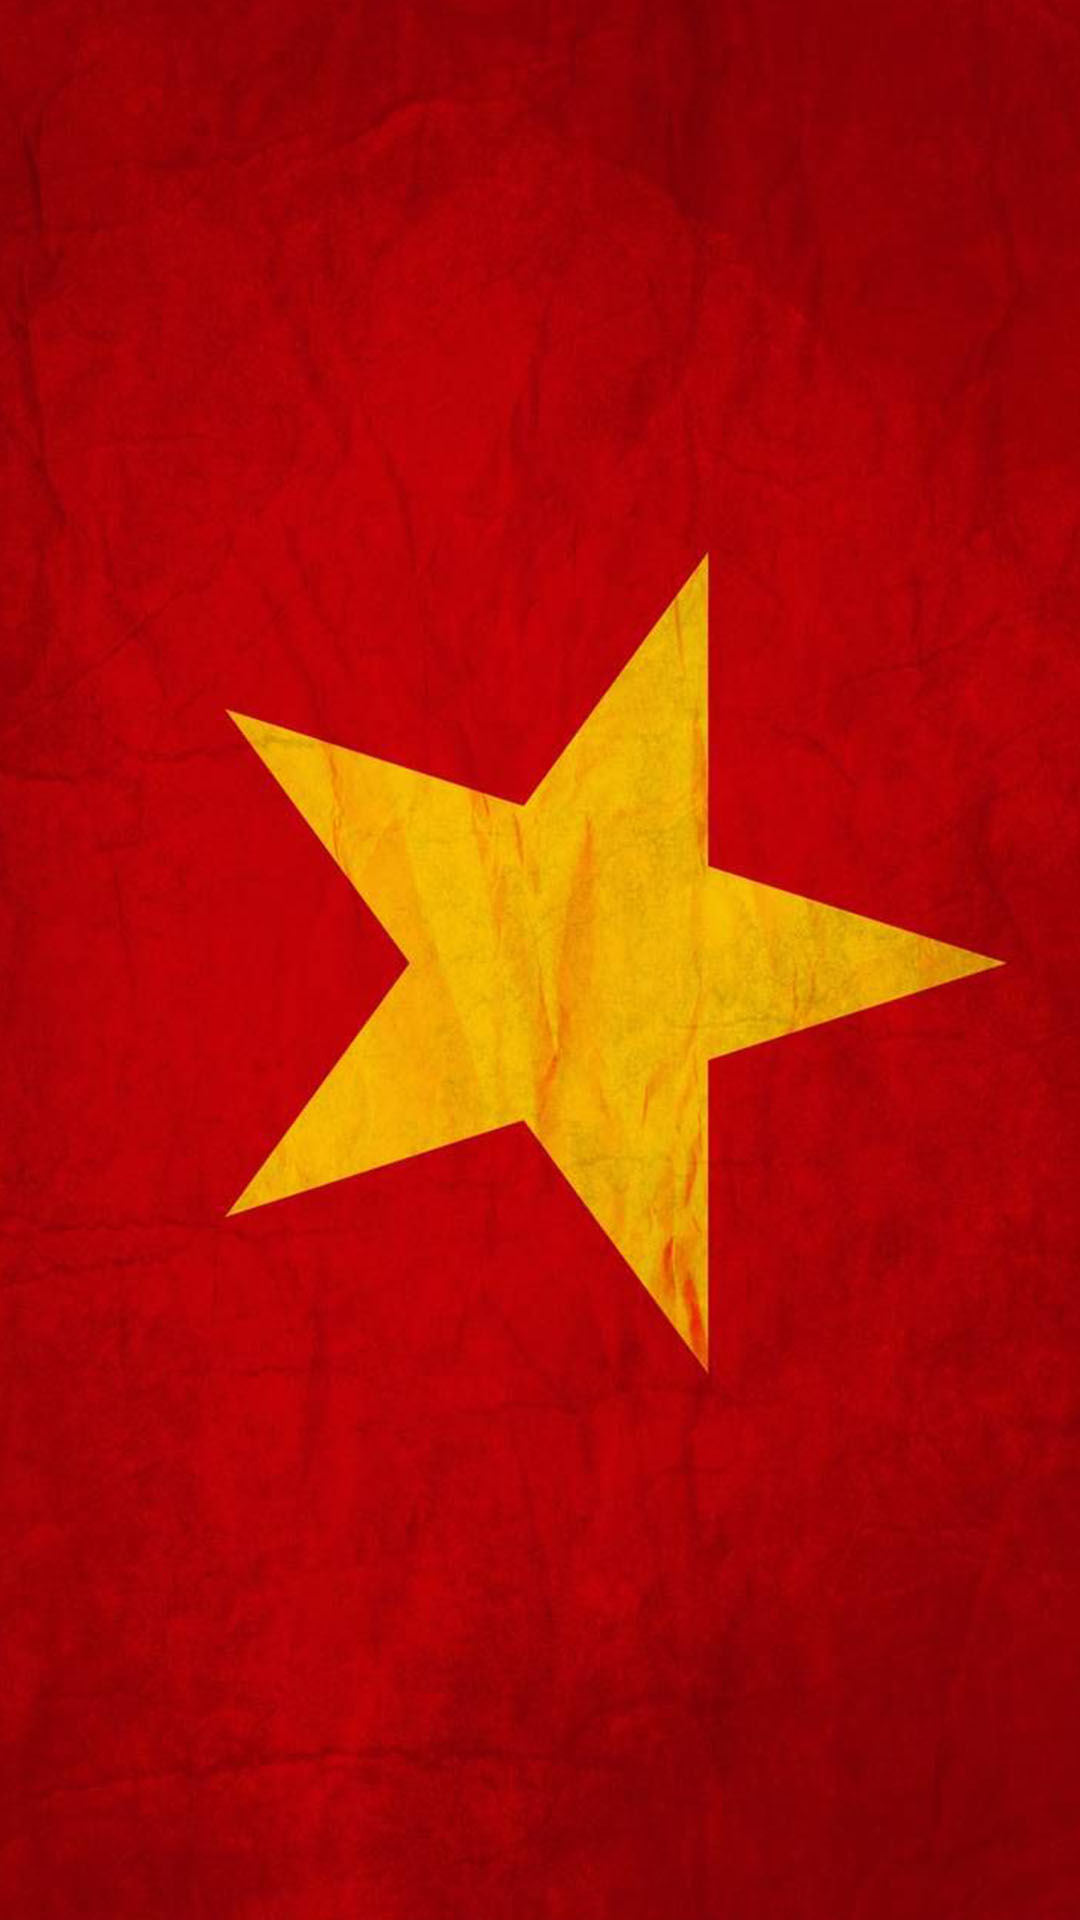 Hình nền cờ Việt Nam là biểu tượng của dân tộc, thể hiện sự tự hào và tình yêu quê hương. Hãy cùng ngắm nhìn hình nền cờ Việt Nam đẹp mắt và cảm nhận trọn vẹn tình cảm yêu nước.